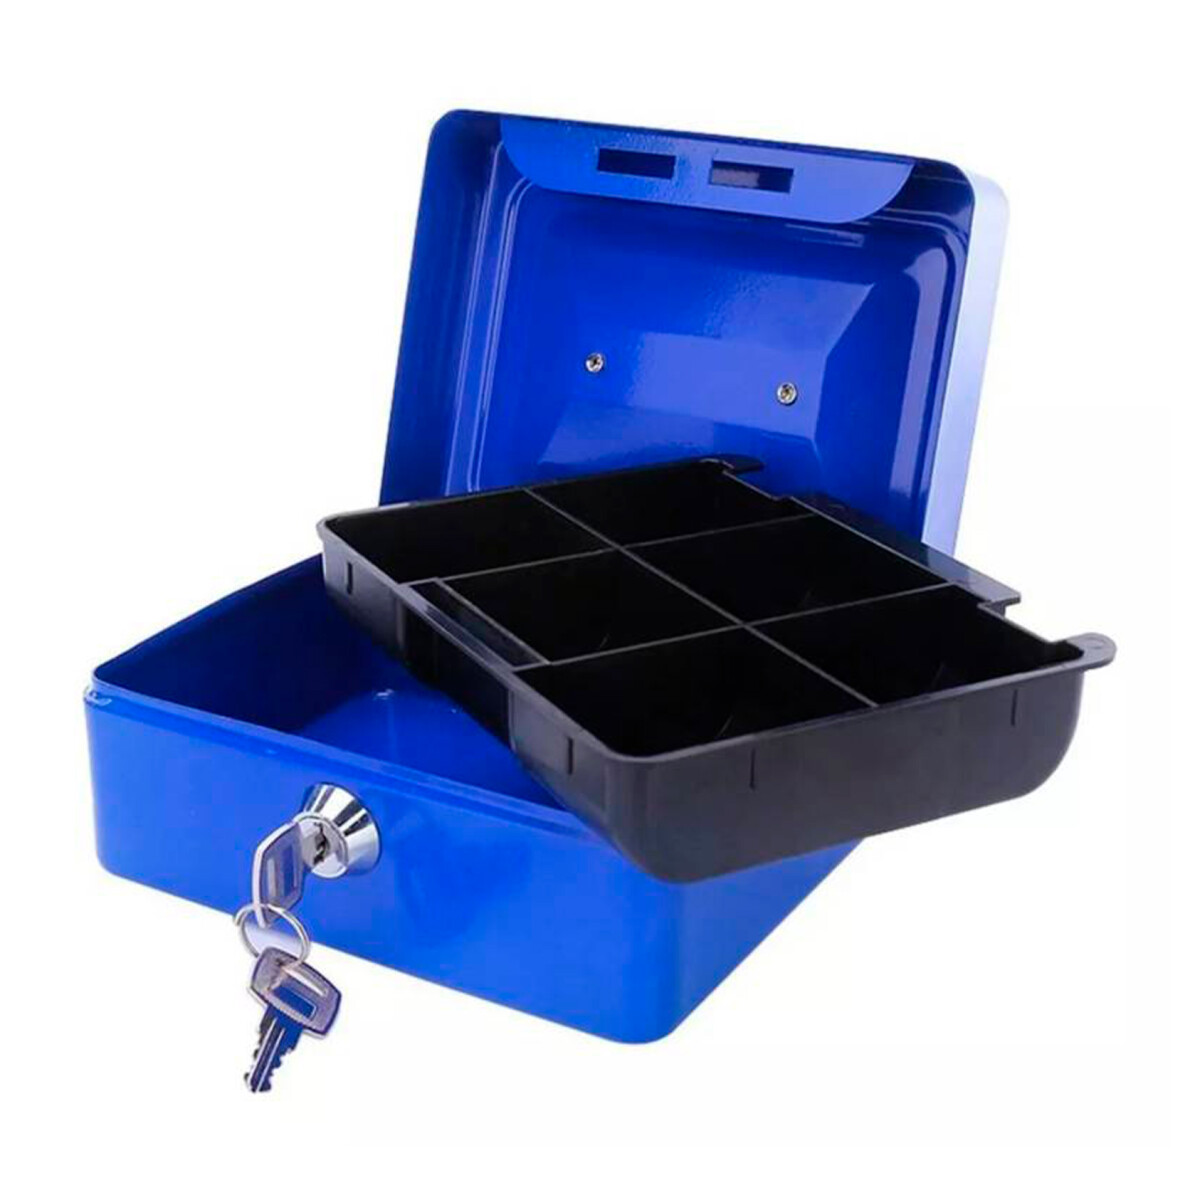 Caja De Seguridad Con Particiones - azul 